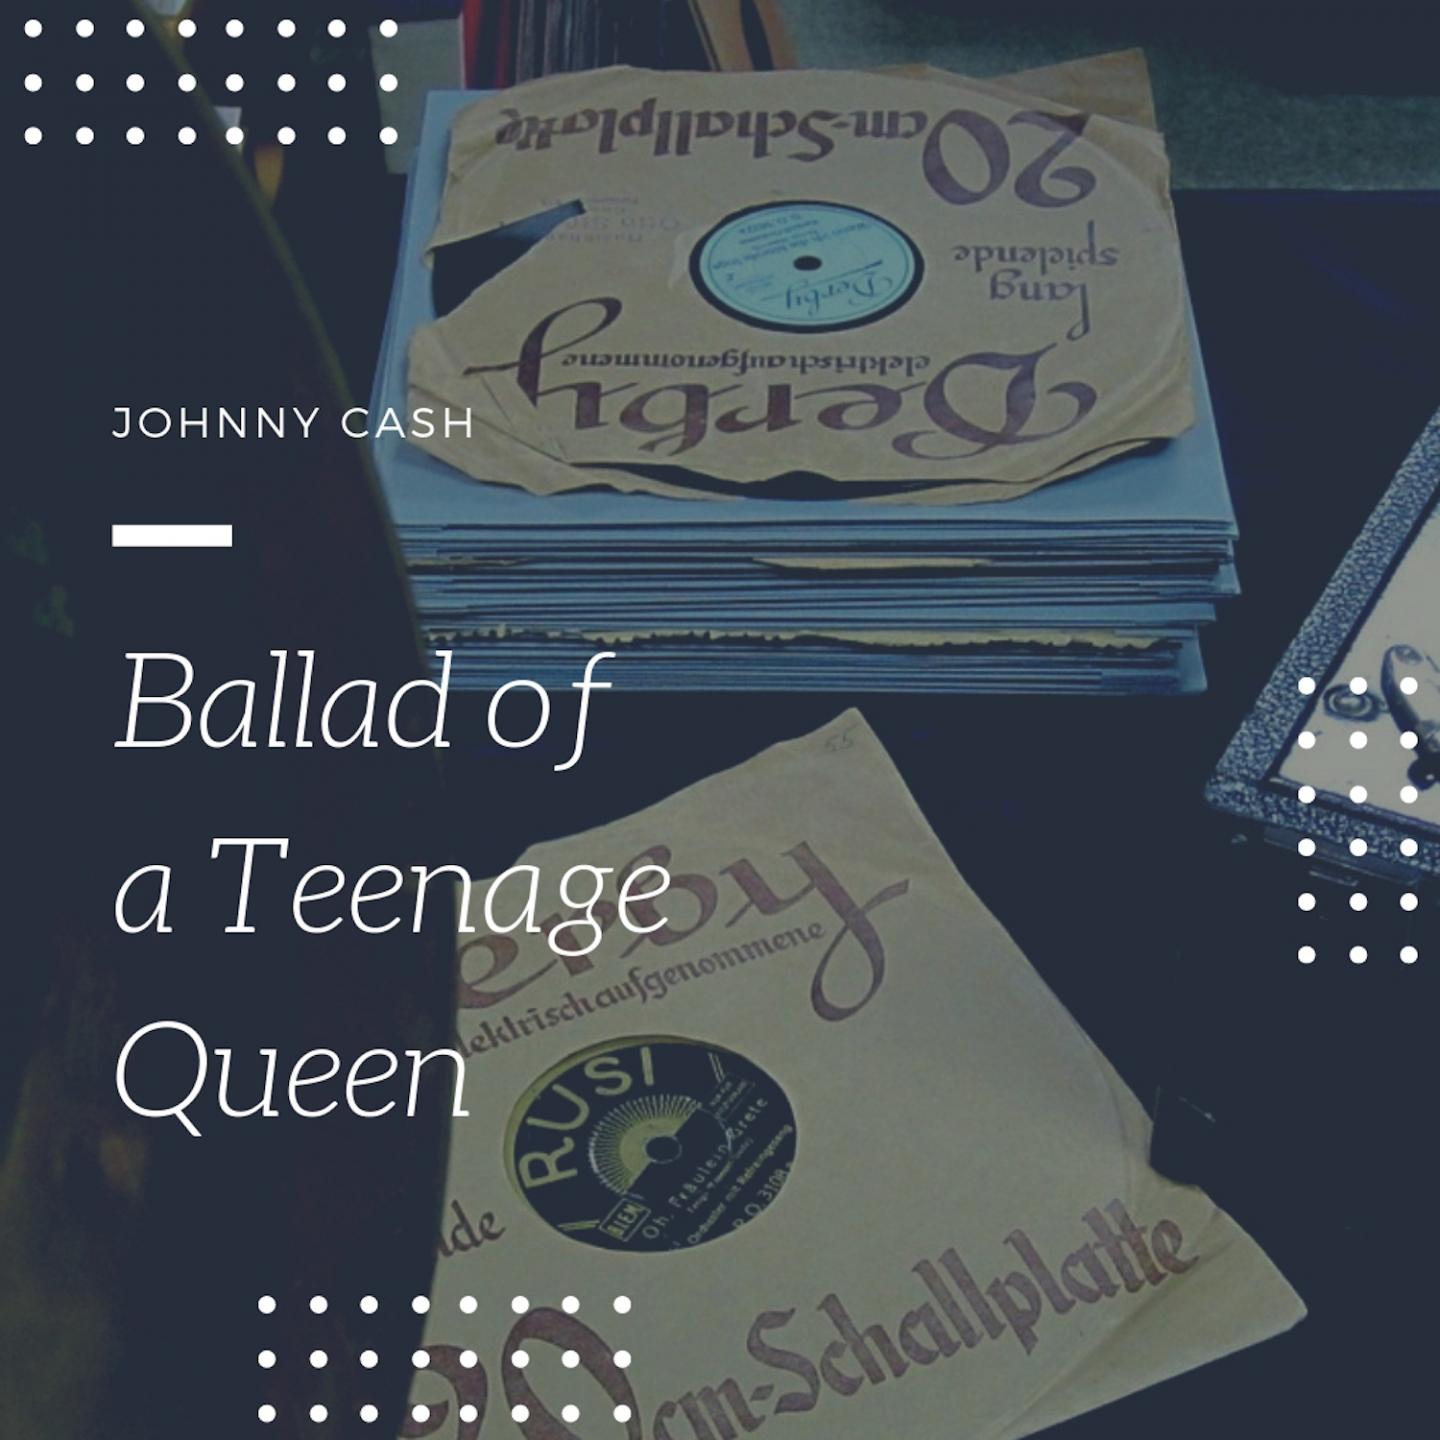 Ballad of a Teenage Queen